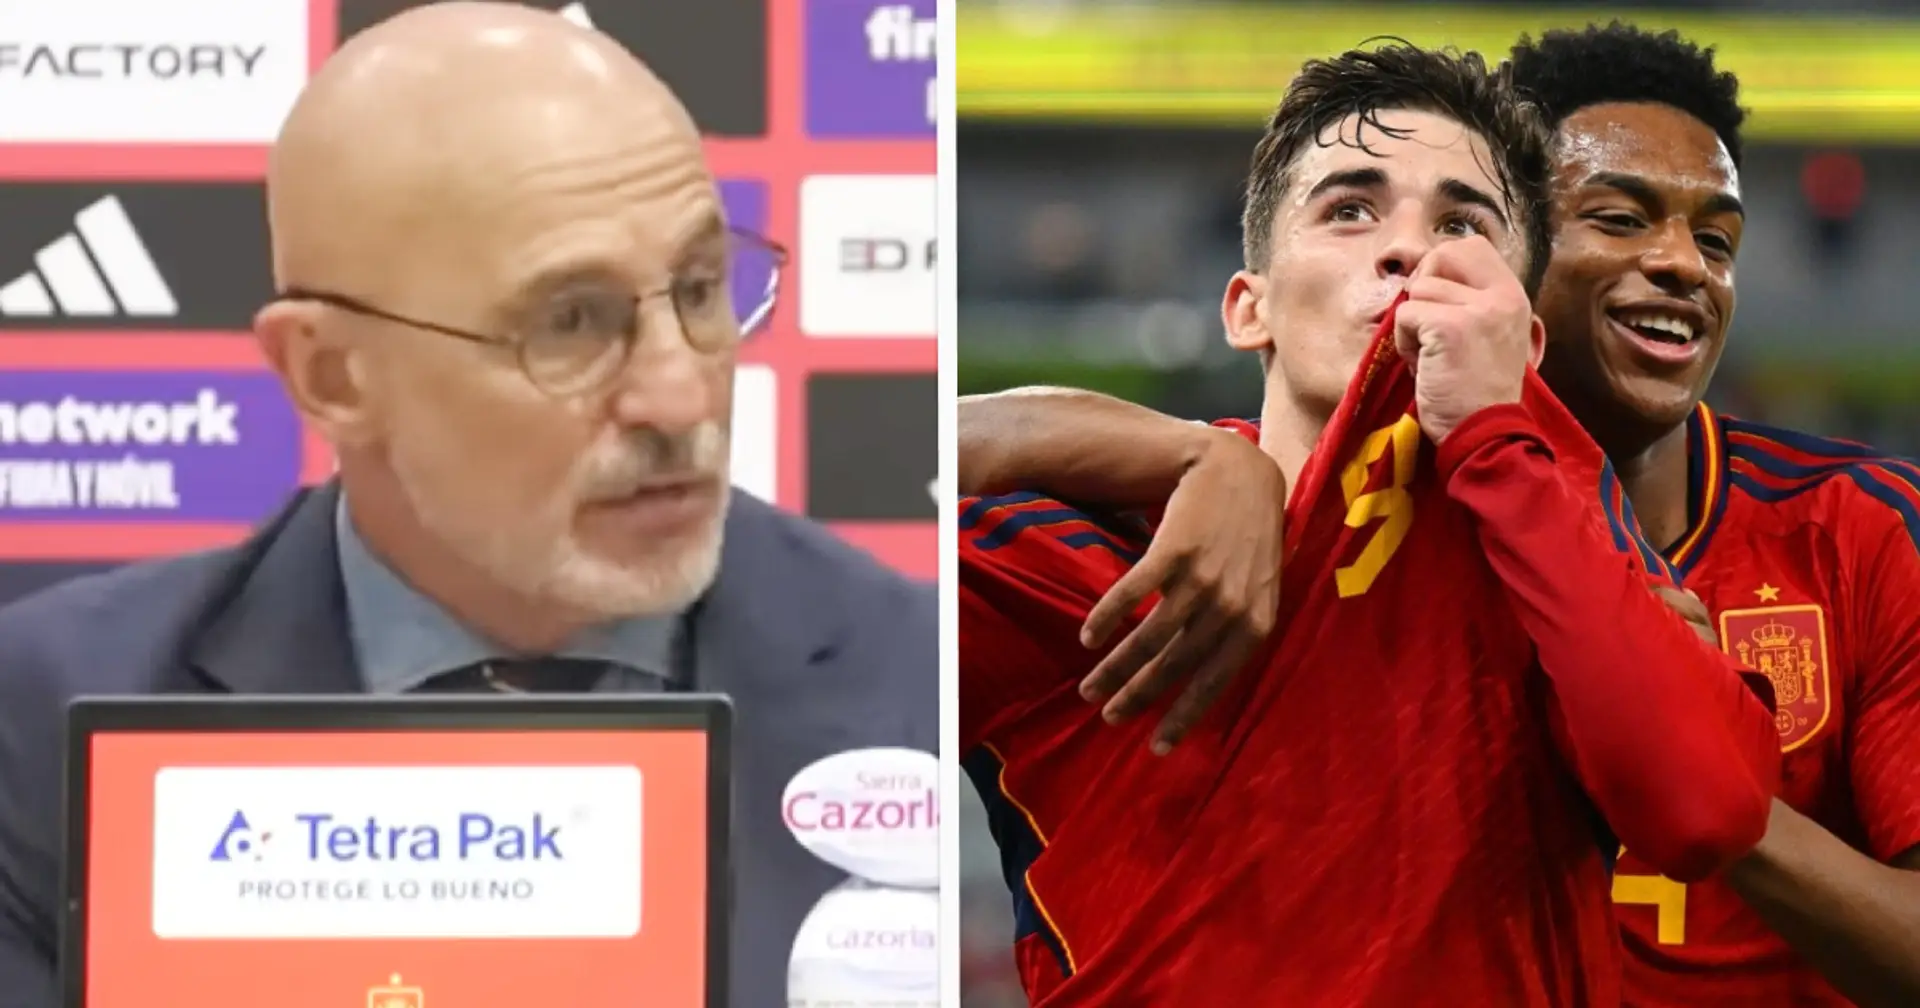 "Wir haben noch nicht sein Bestes gesehen": Spaniens Trainer De La Fuente findet deutliche Worte für Gavi